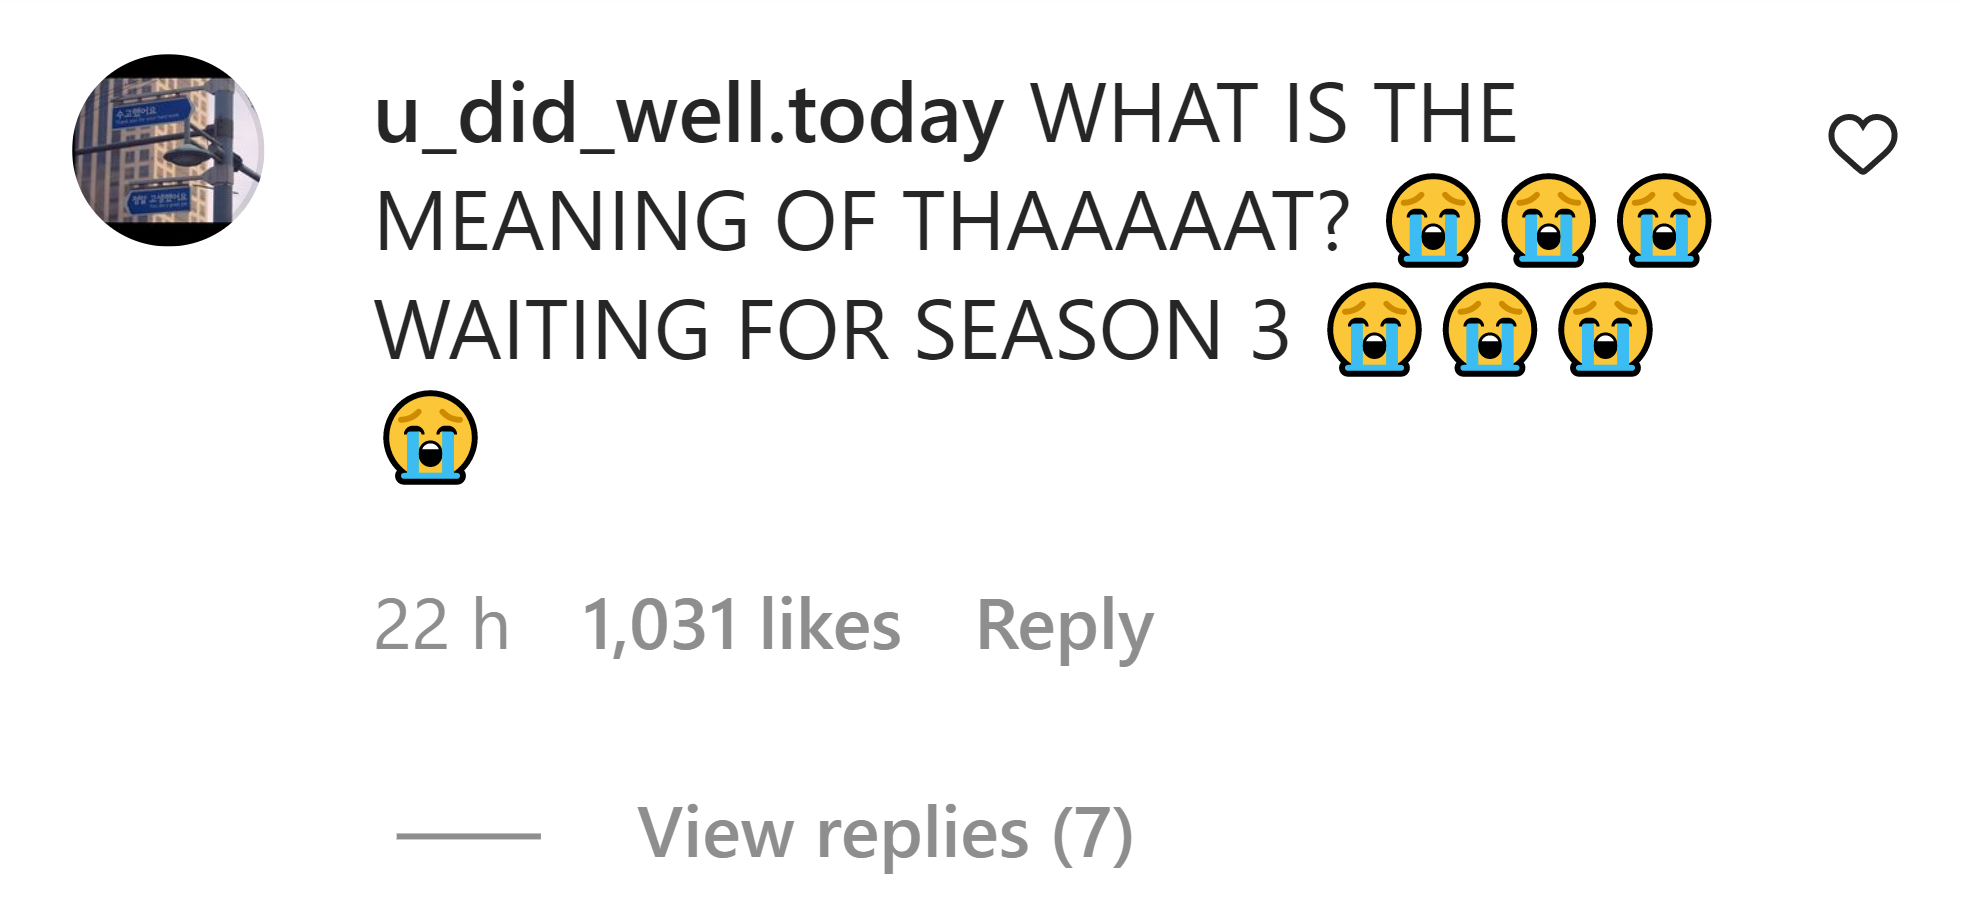 Hospital Playlist season 3 - netizen's reaction regarding the possible release of season 3